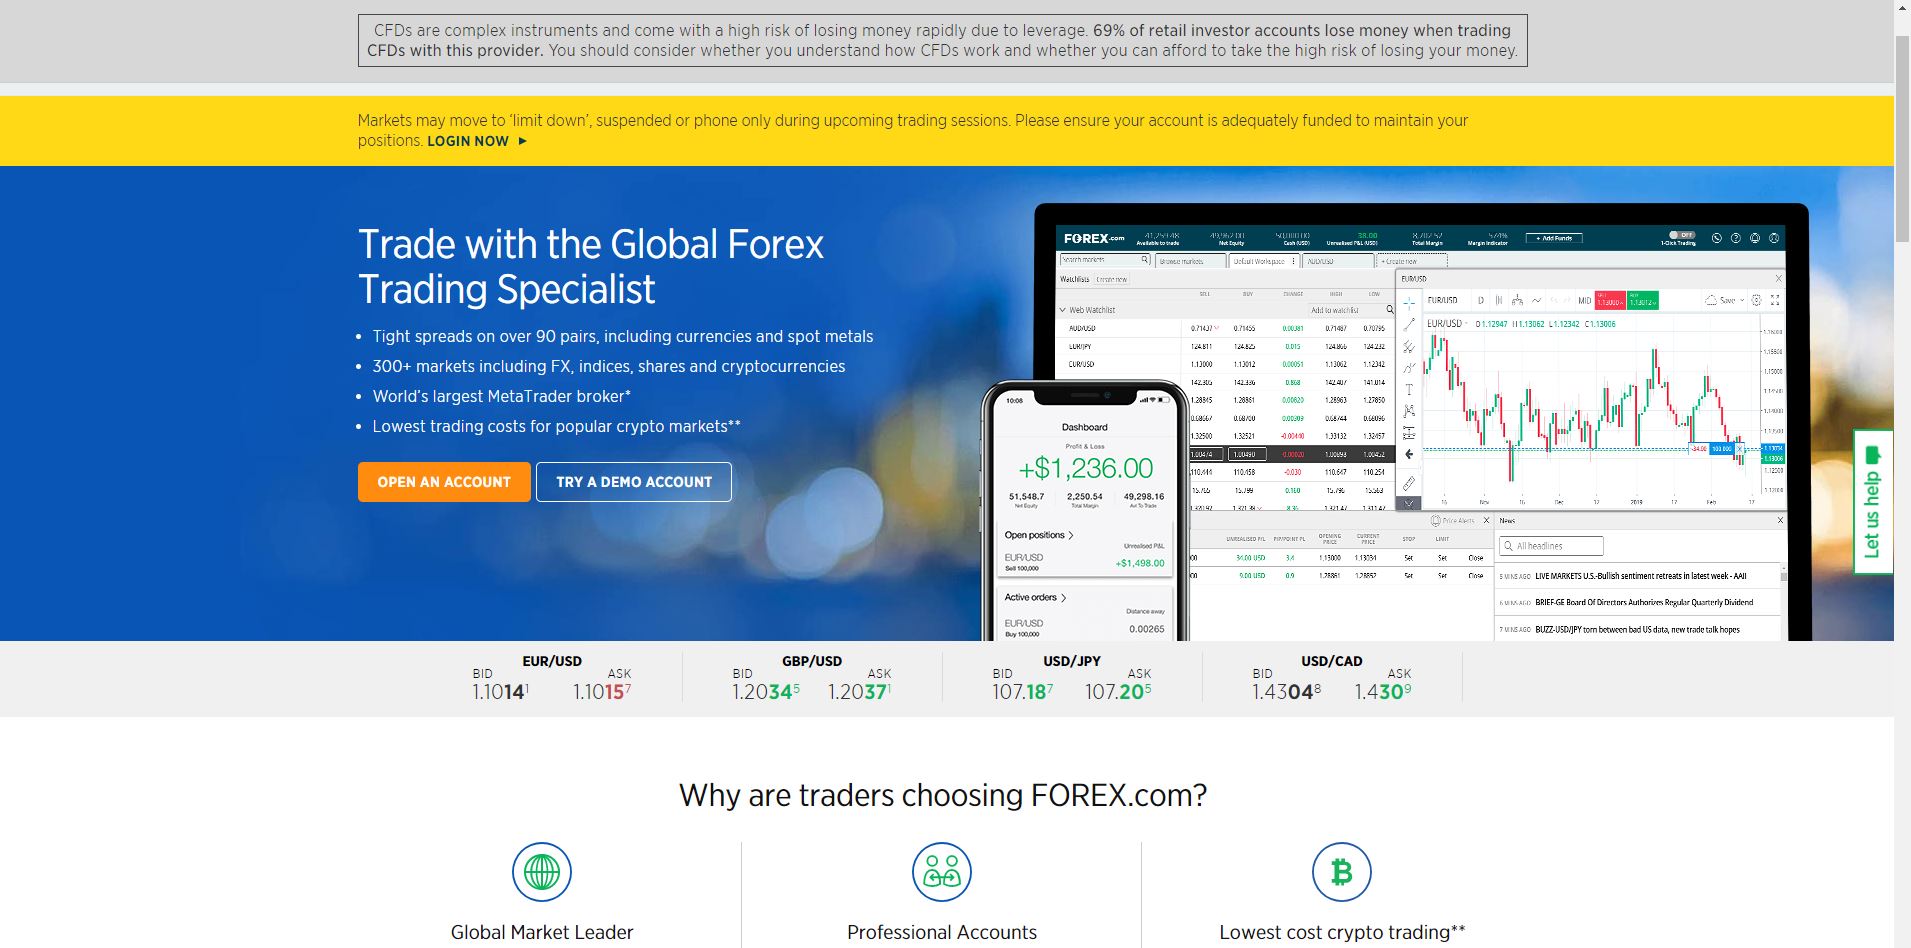 Sito ufficiale Forex.com